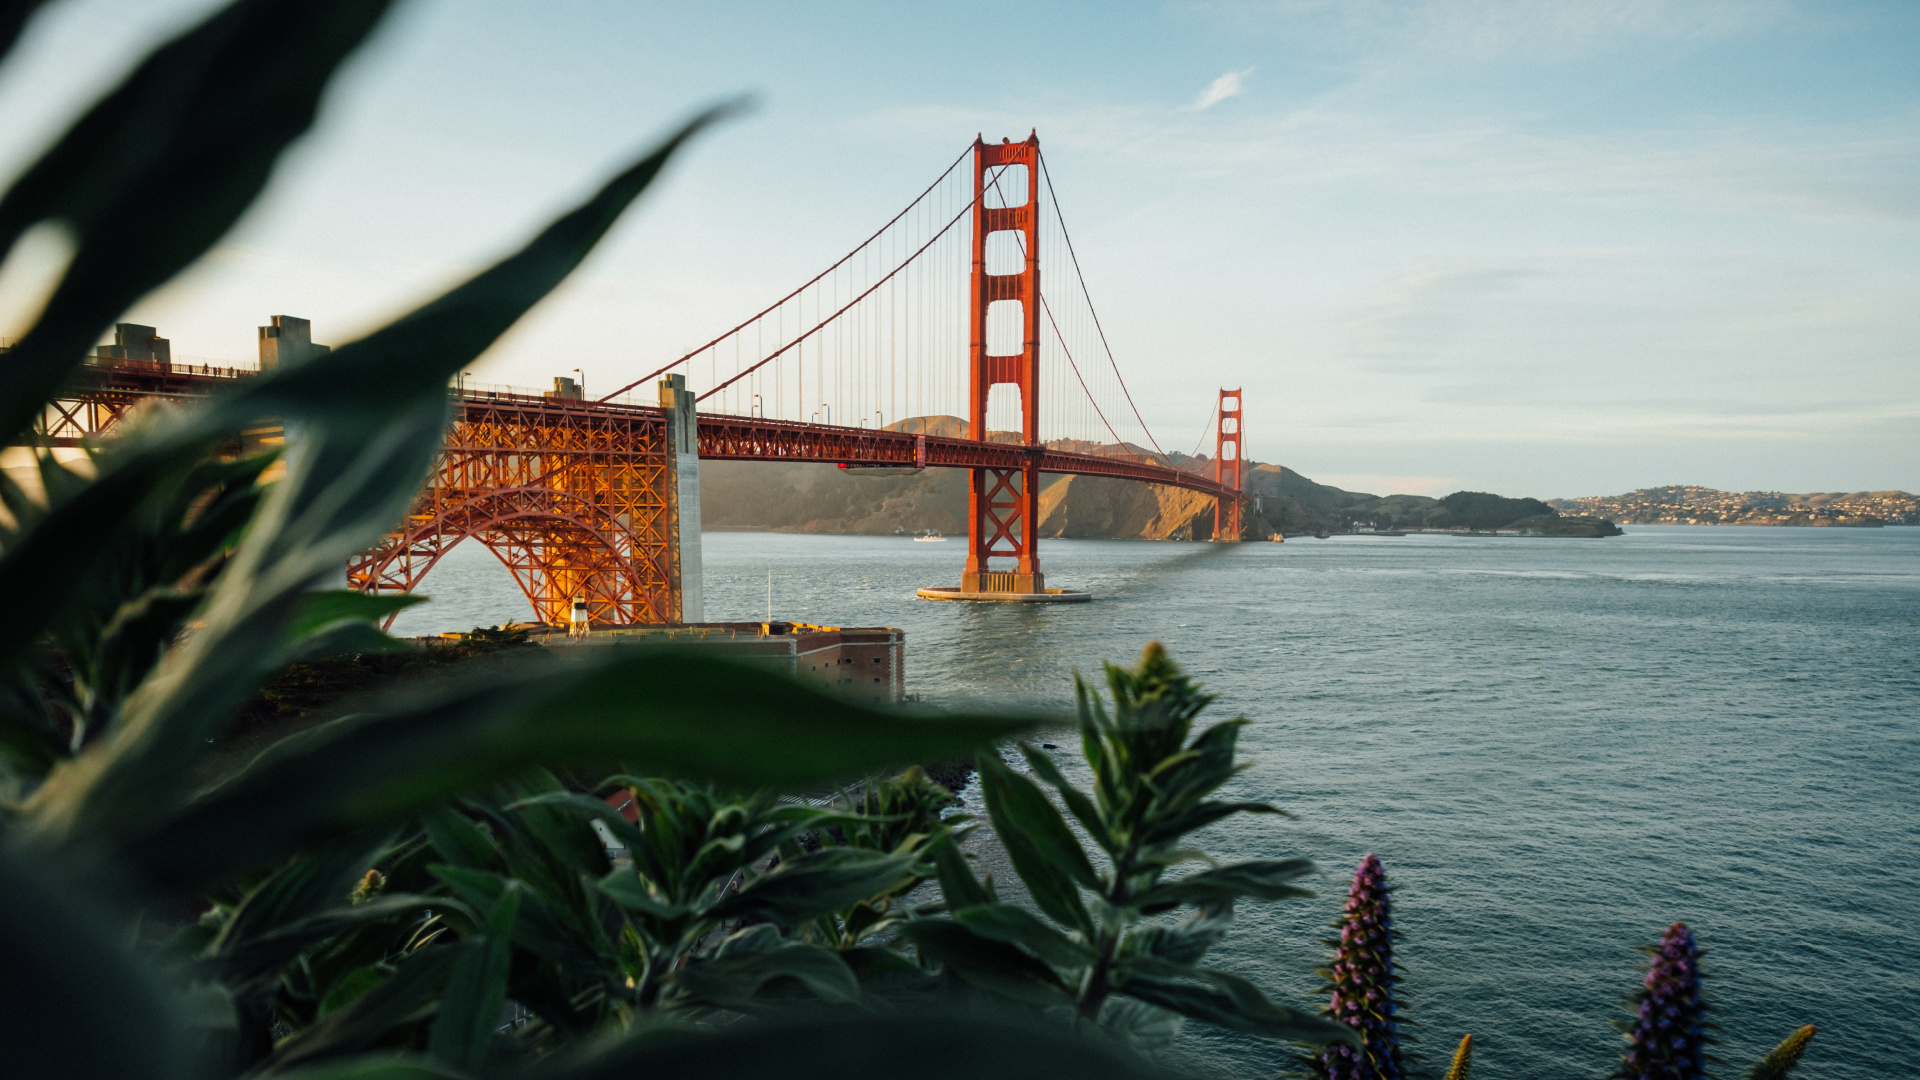 Golden Gate Bridge - Crissy Field, Muir Woods National: Đừng bỏ lỡ cảnh tượng tuyệt đẹp về cây cầu vàng quen thuộc trong ánh bình minh. Tại Crissy Field và Khu rừng Muir, bạn sẽ được trải nghiệm nhịp sống trong lành và bình yên của thiên nhiên. Hãy đến và tìm hiểu tại sao Golden Gate Bridge - Crissy Field, Muir Woods National luôn là điểm đến ưa thích của du khách và người dân địa phương.